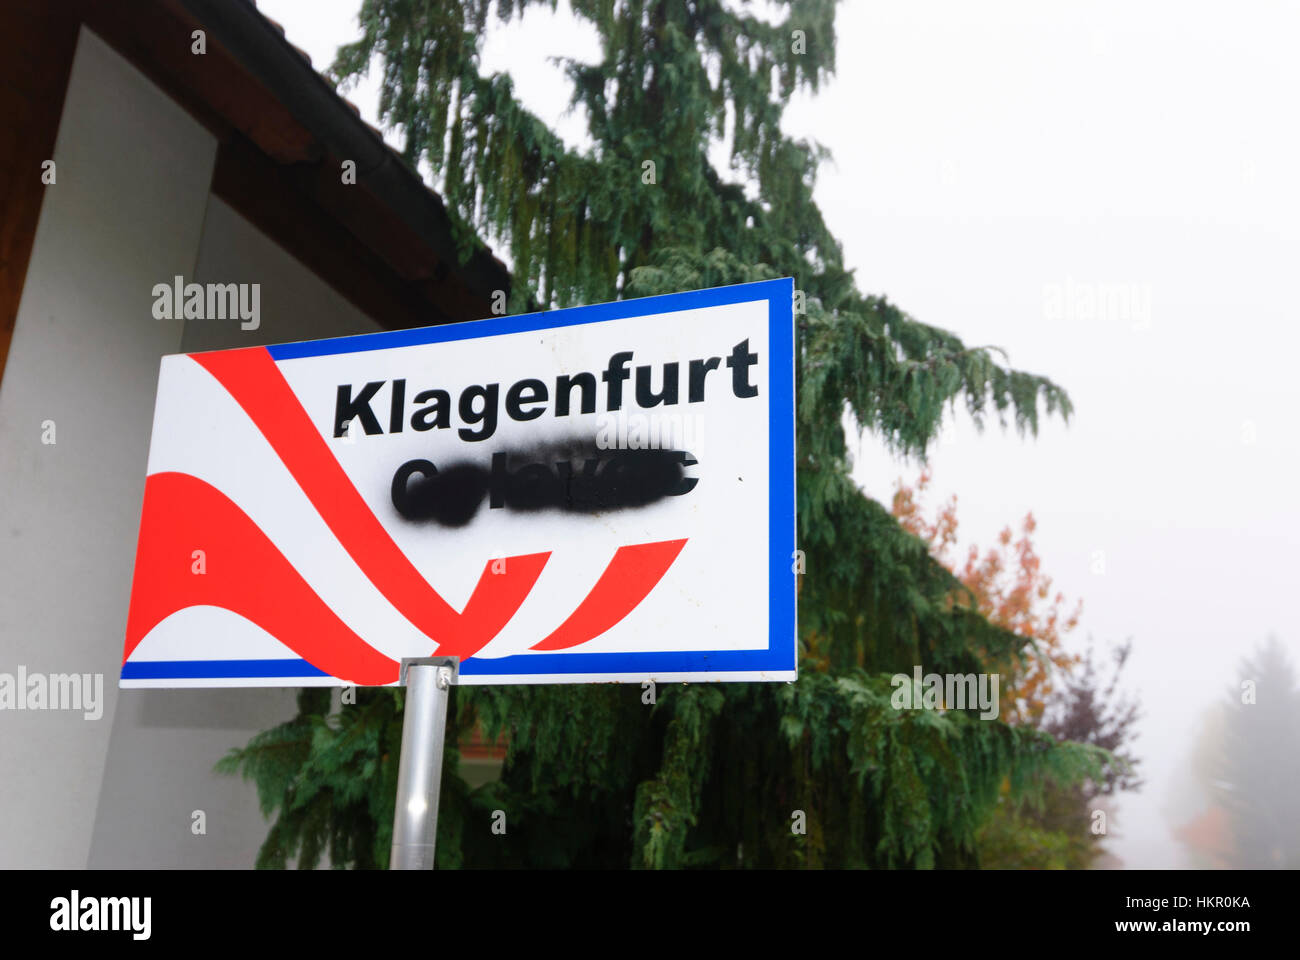 Klagenfurt: Bilingüe firmar con el nombre esloveno Celovec en el jardín de una casa privada, presumiblemente por un oponente usando la lengua eslovena, , Foto de stock